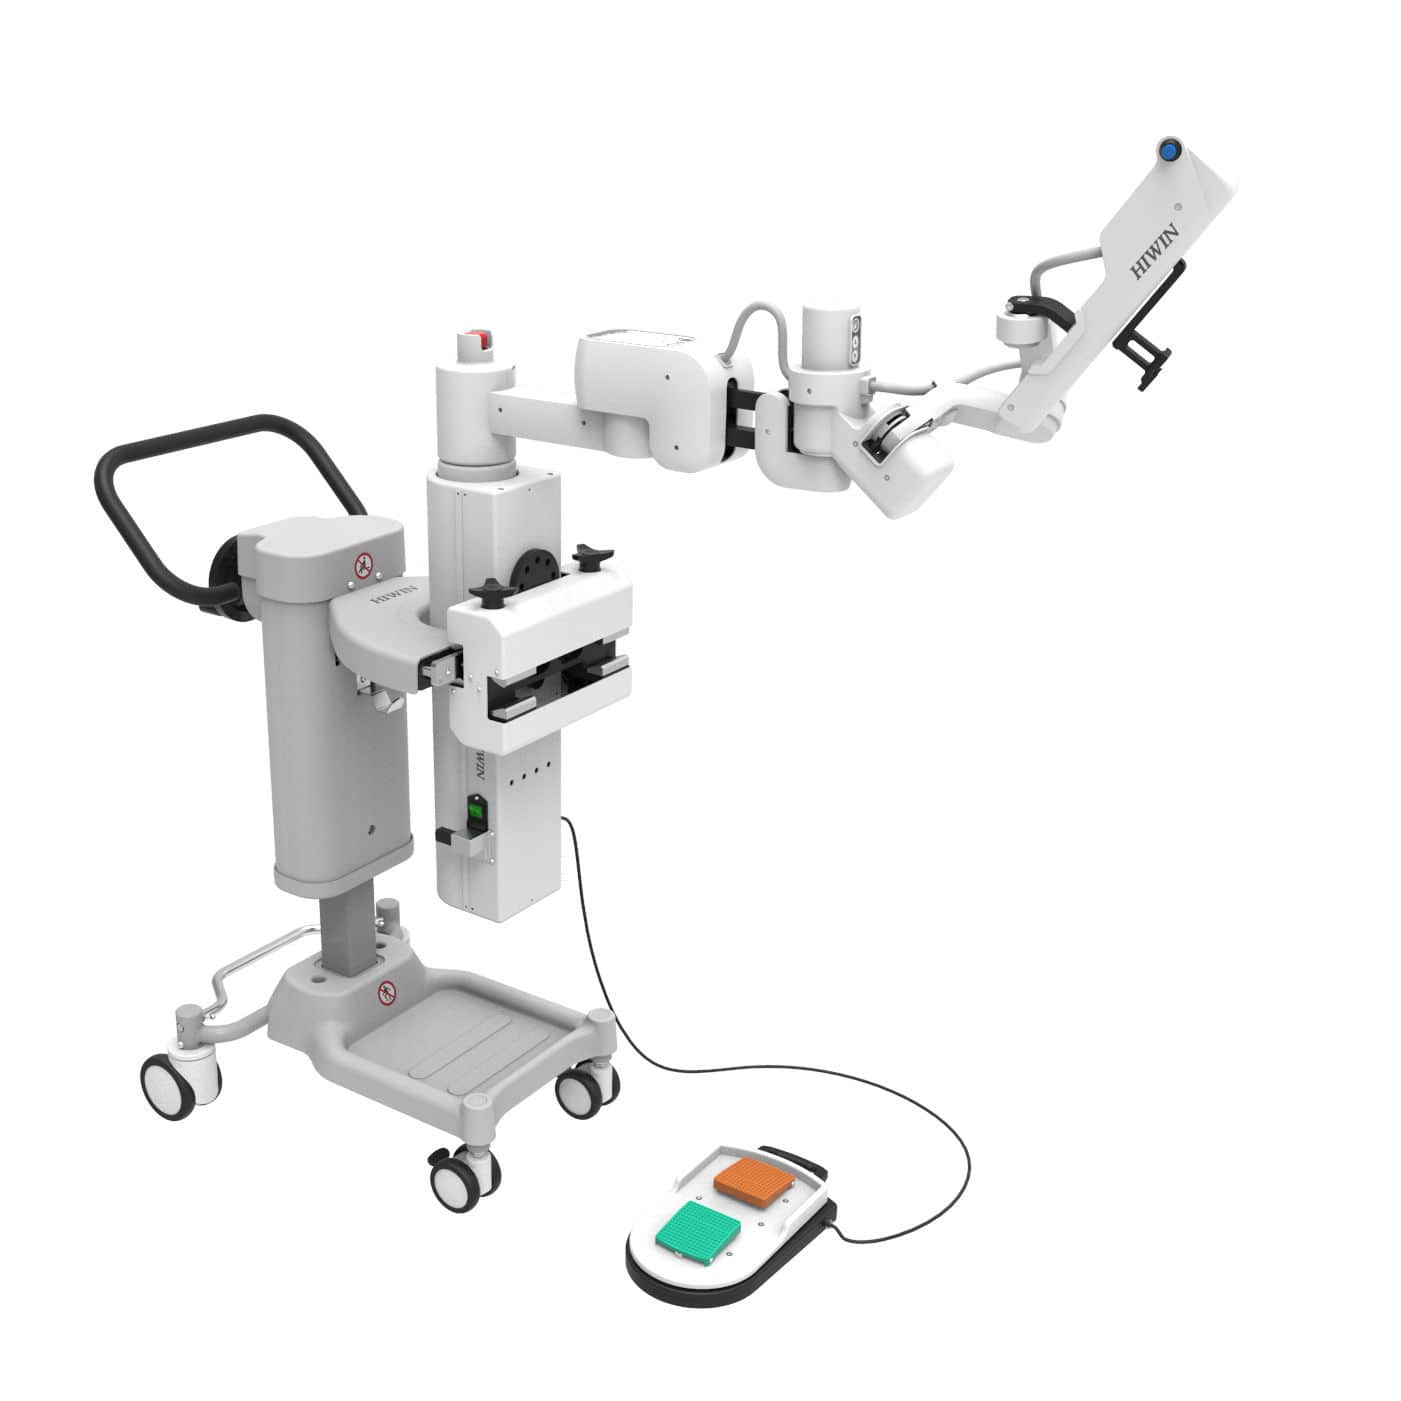 ชุดแขนหุ่นยนต์ถือกล้องขณะผ่าตัดผ่านกล้อง  HIWIN Robotic endoscope holder  HIWIN